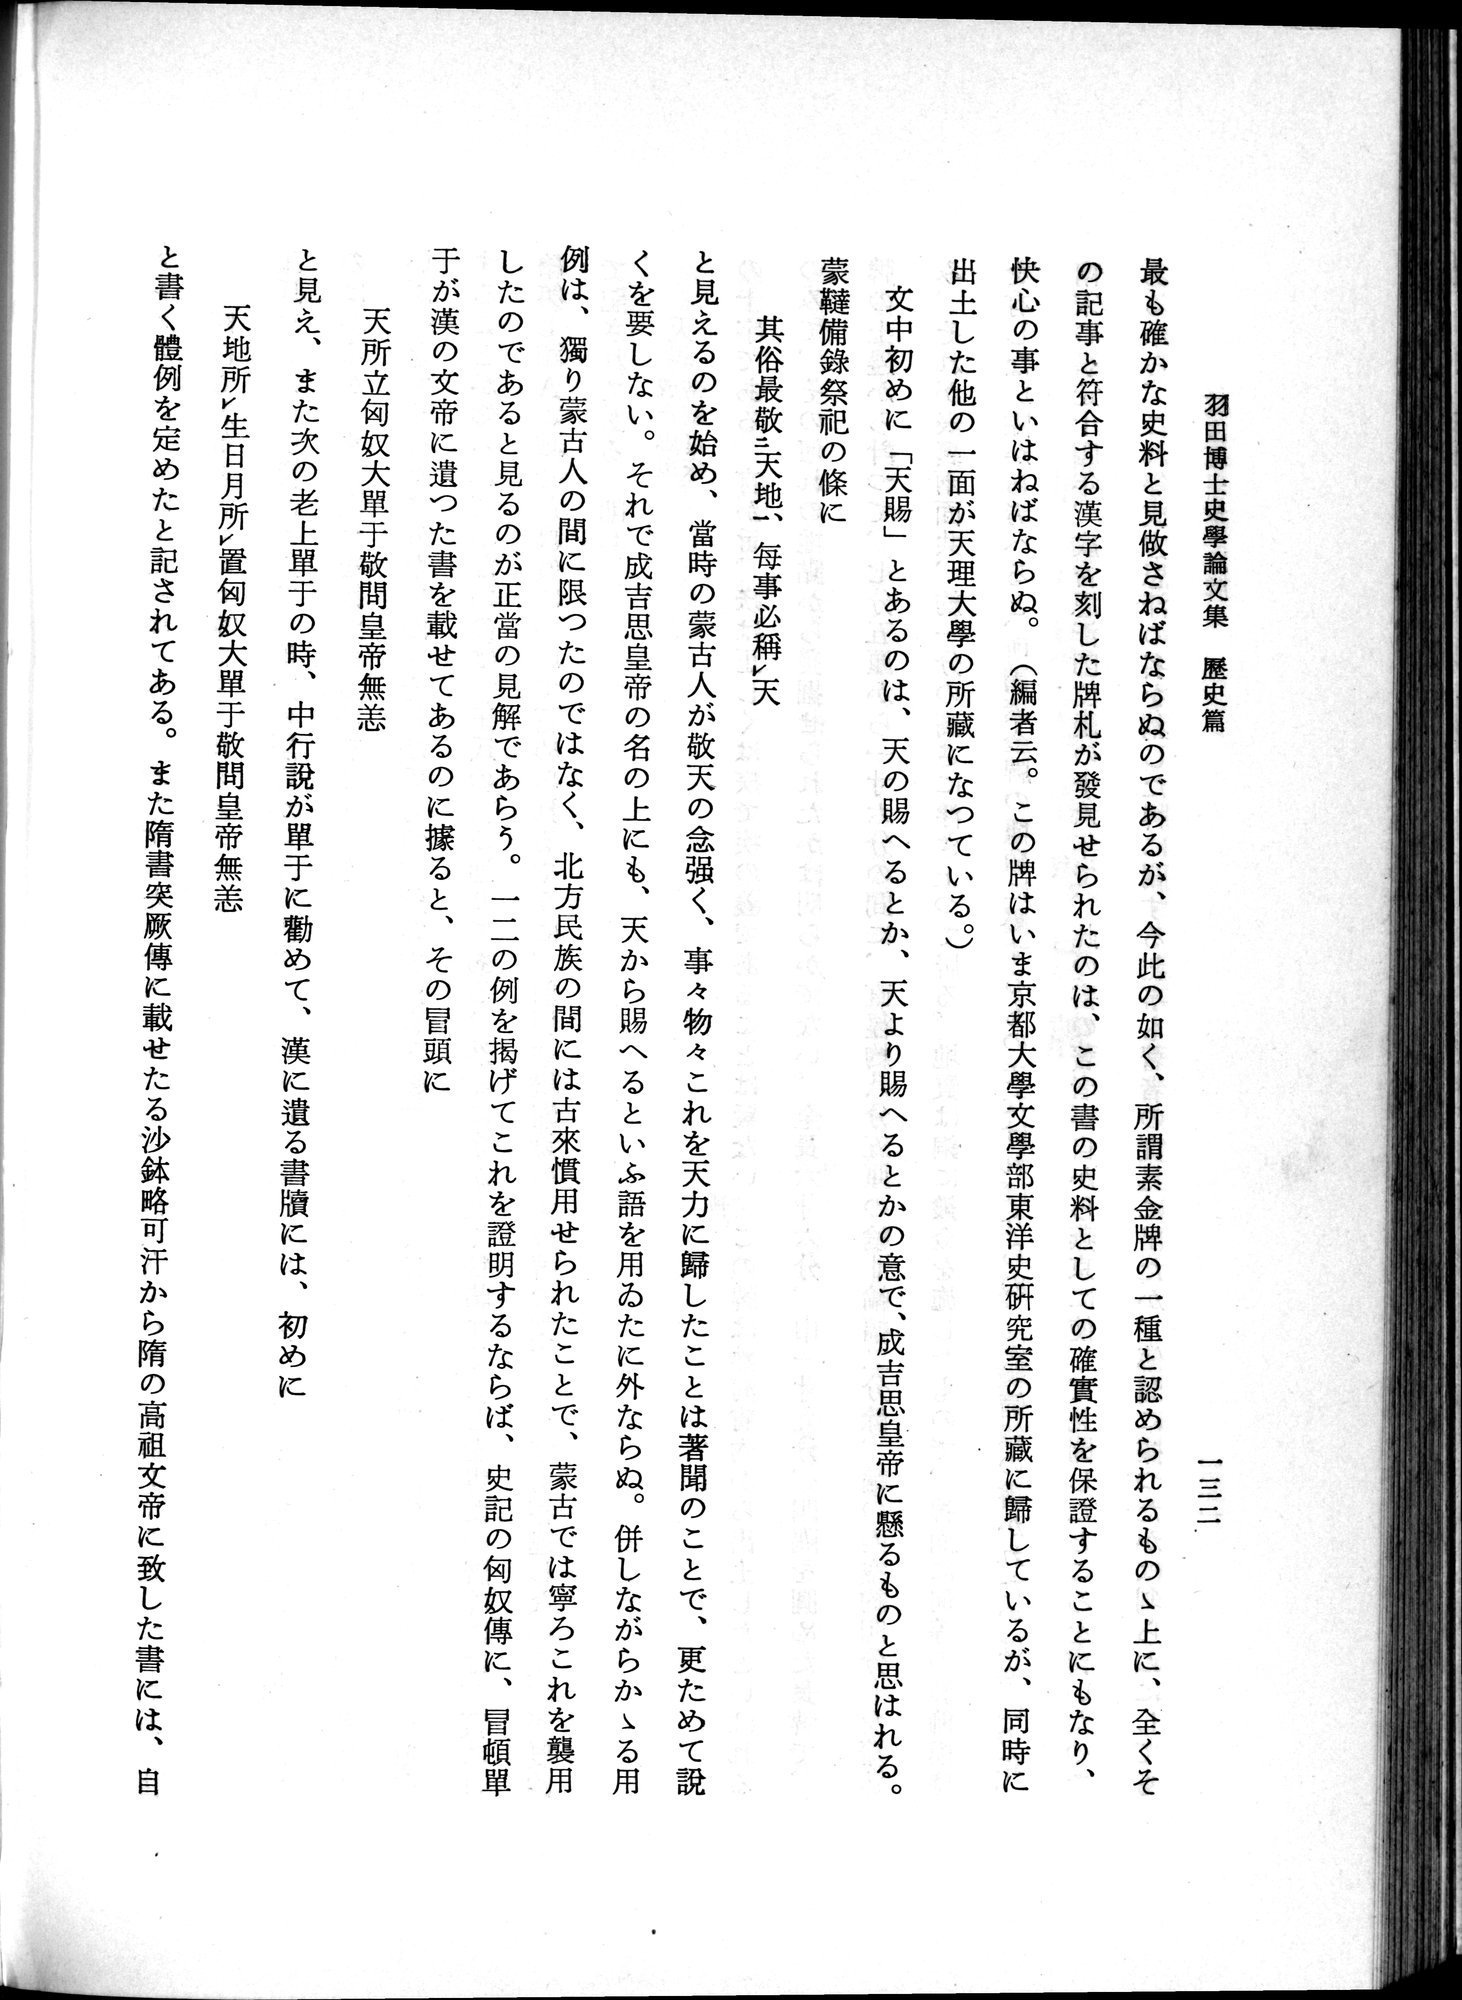 羽田博士史学論文集 : vol.1 / Page 170 (Grayscale High Resolution Image)